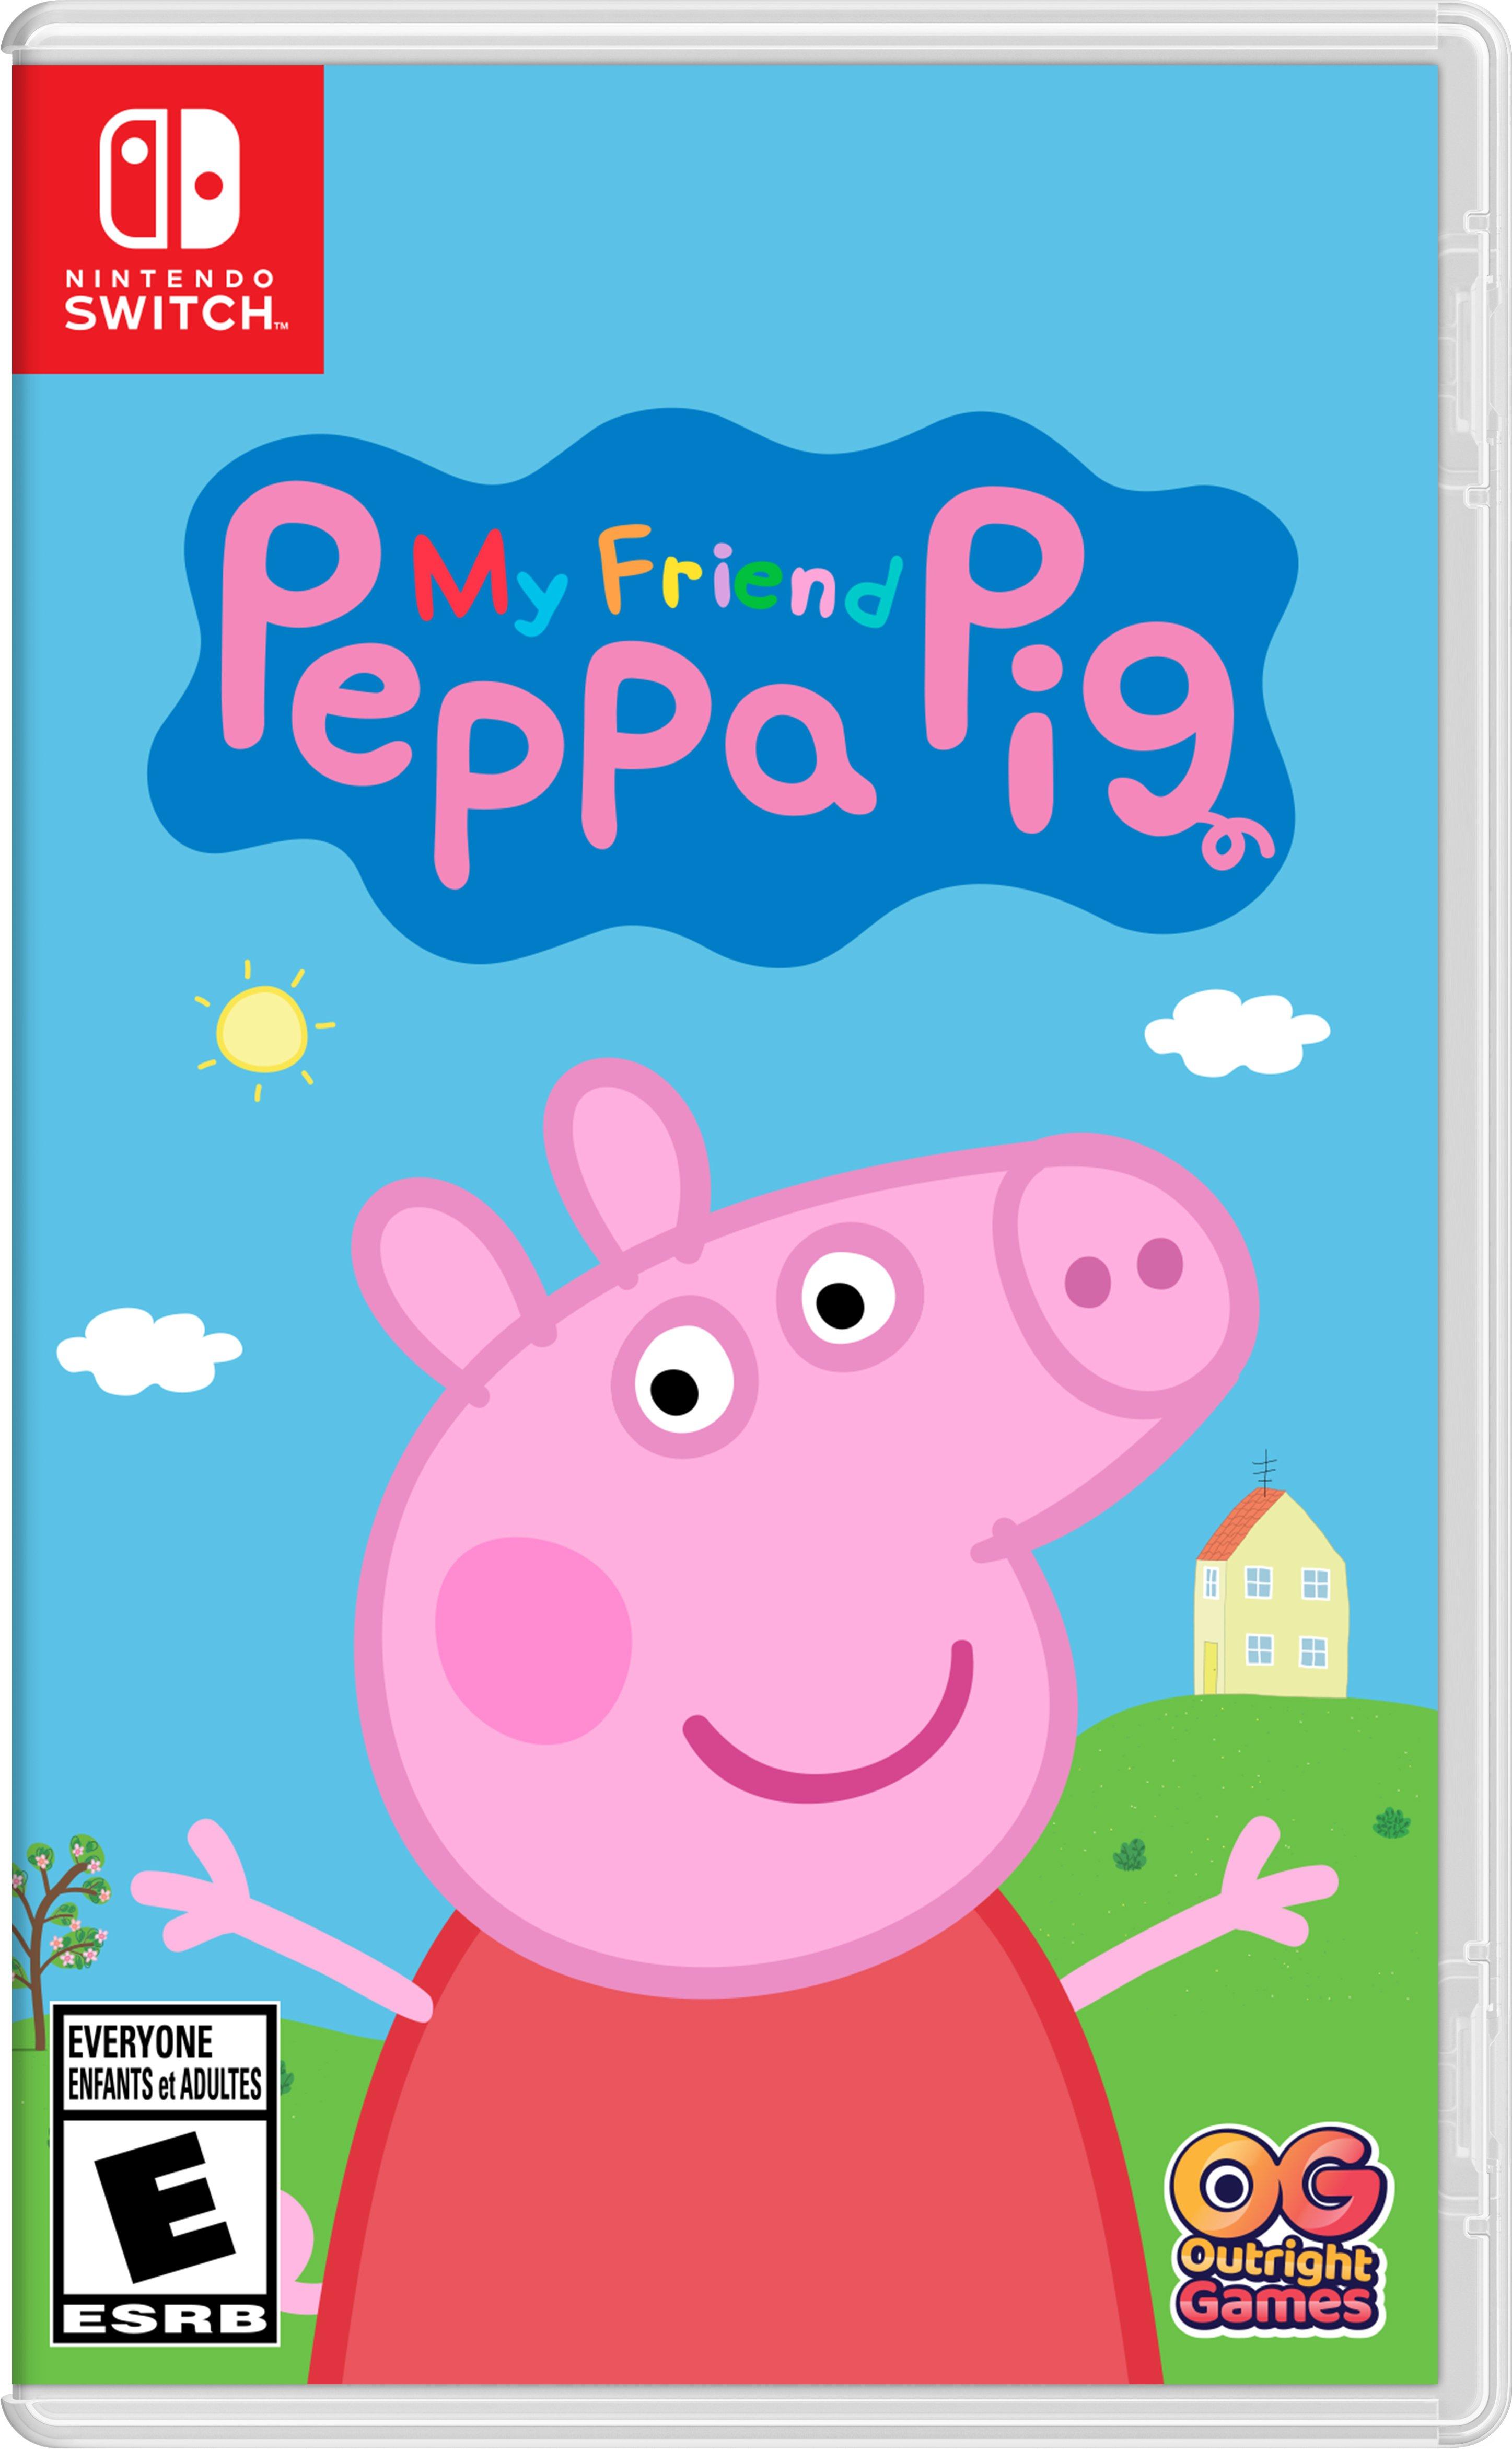 Peppa Pig em Português - Vídeos Populares 